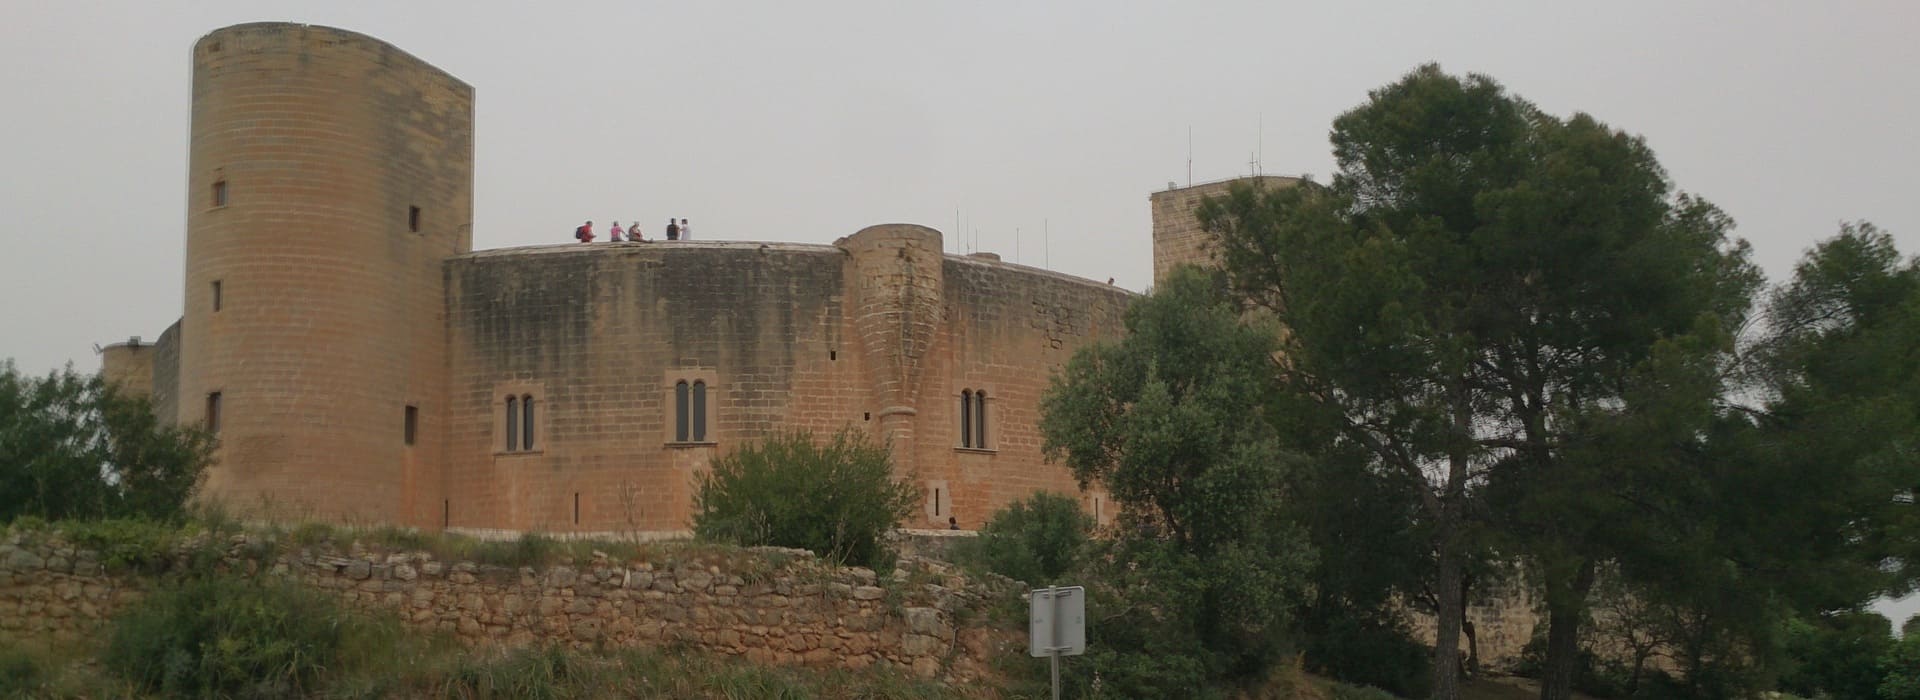 castillo bellver - zamek na majorce